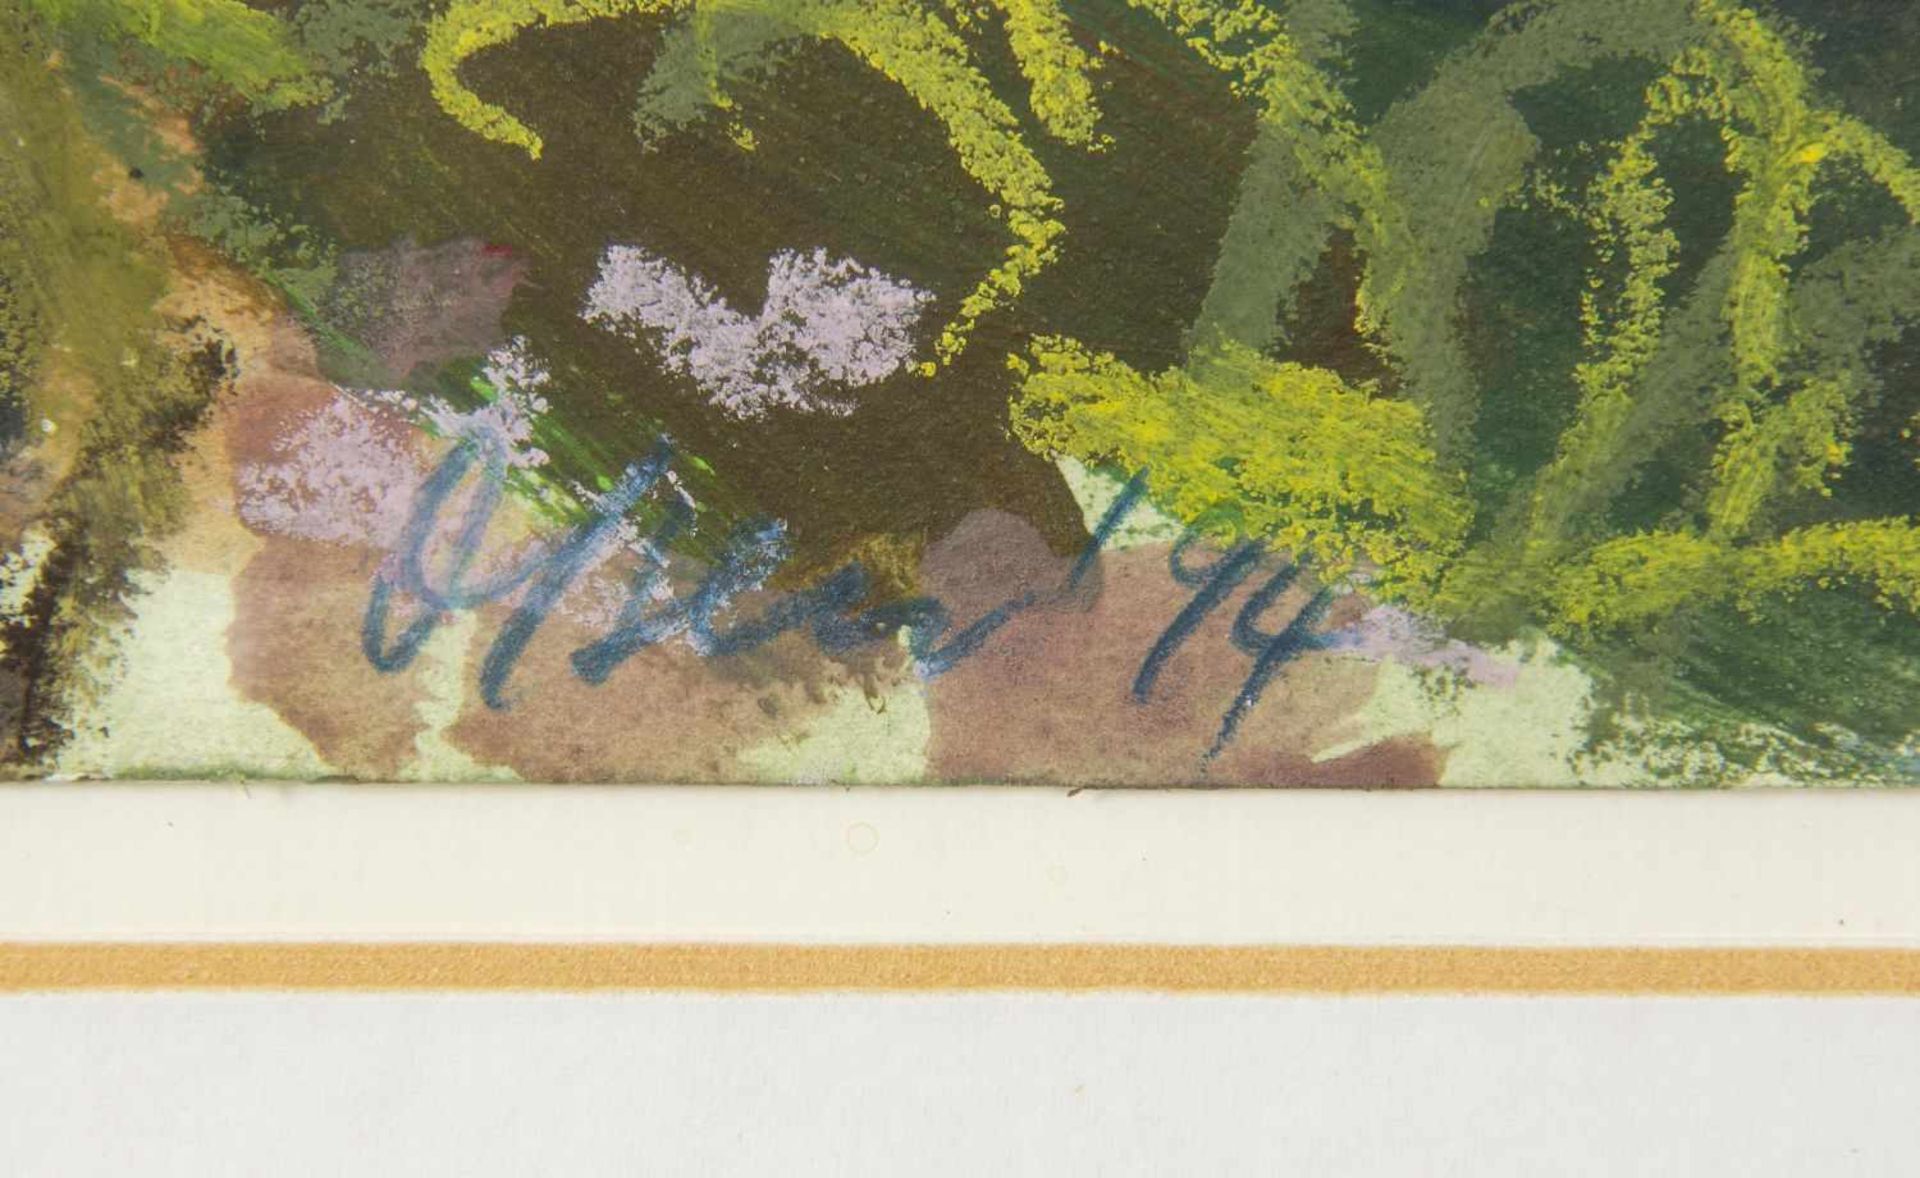 OlsenFelsen an der Küste. 4 Gouachen mit Farbkreide. Sign. und dat. (19)94. 29,5 x 39,5 cm. - Bild 7 aus 7